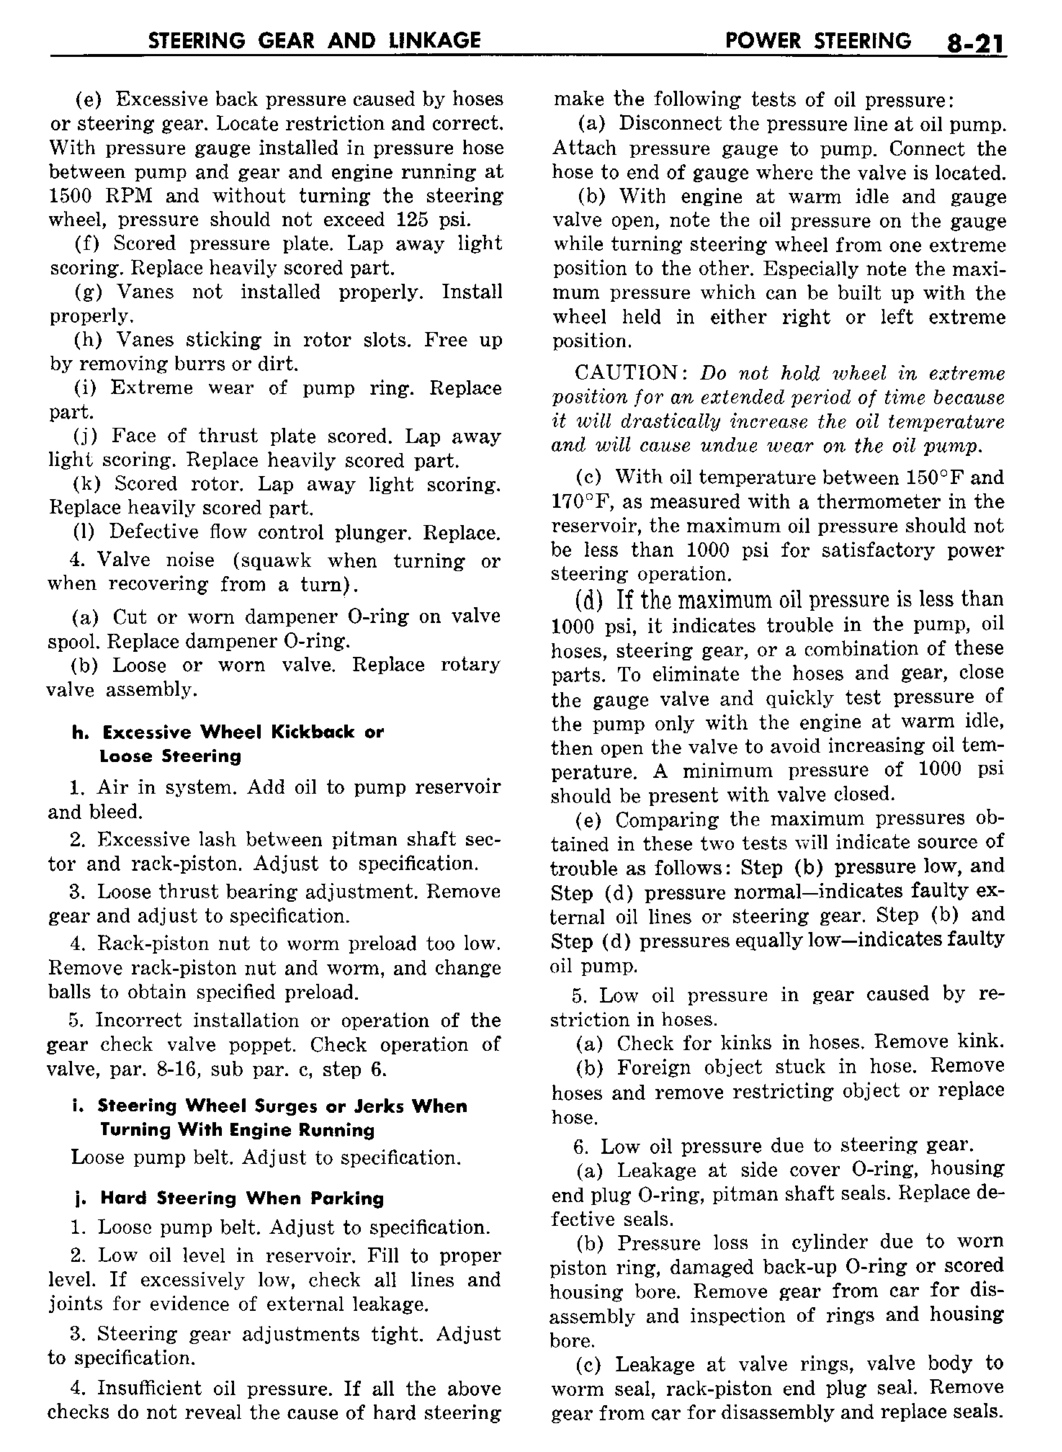 n_09 1960 Buick Shop Manual - Steering-021-021.jpg